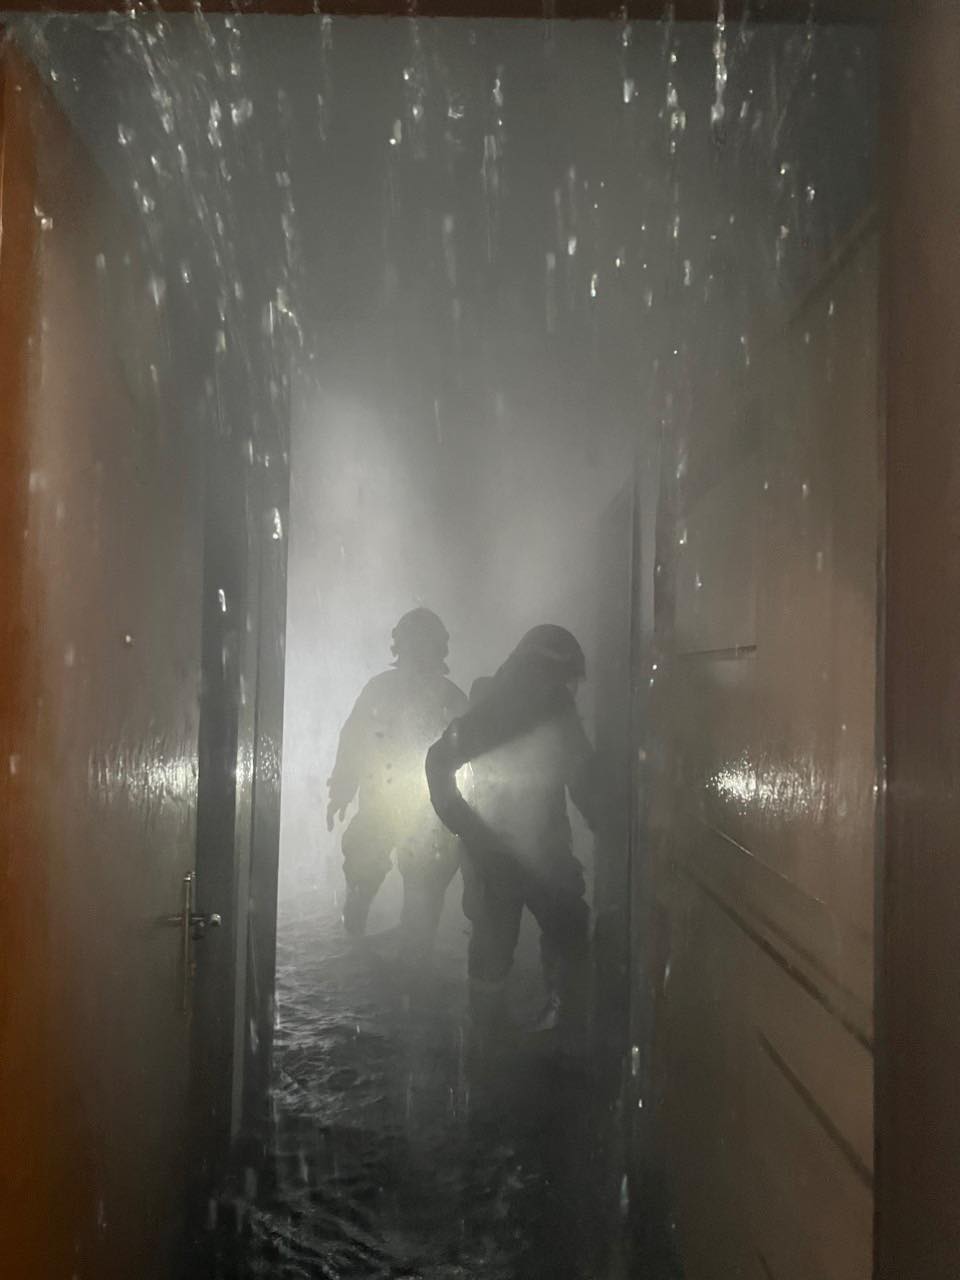 Cháy căn hộ tầng chung cư cao cấp ở Hà Nội, khói bốc nghi ngút - 4